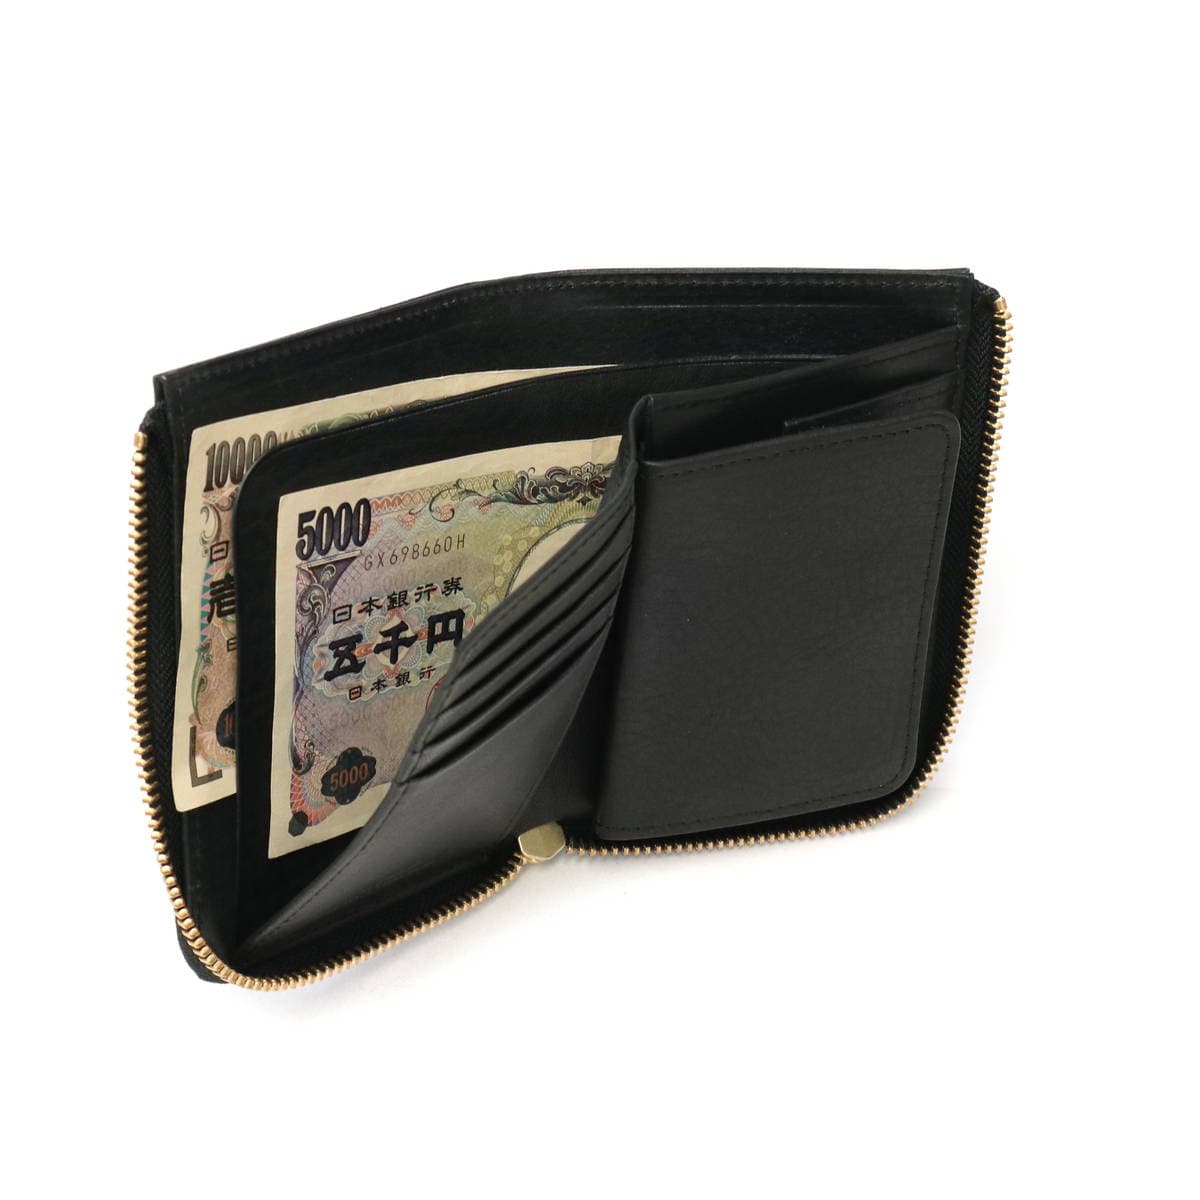 SLOW スロウ bono Lzip wallet L 二つ折り財布 SO857L